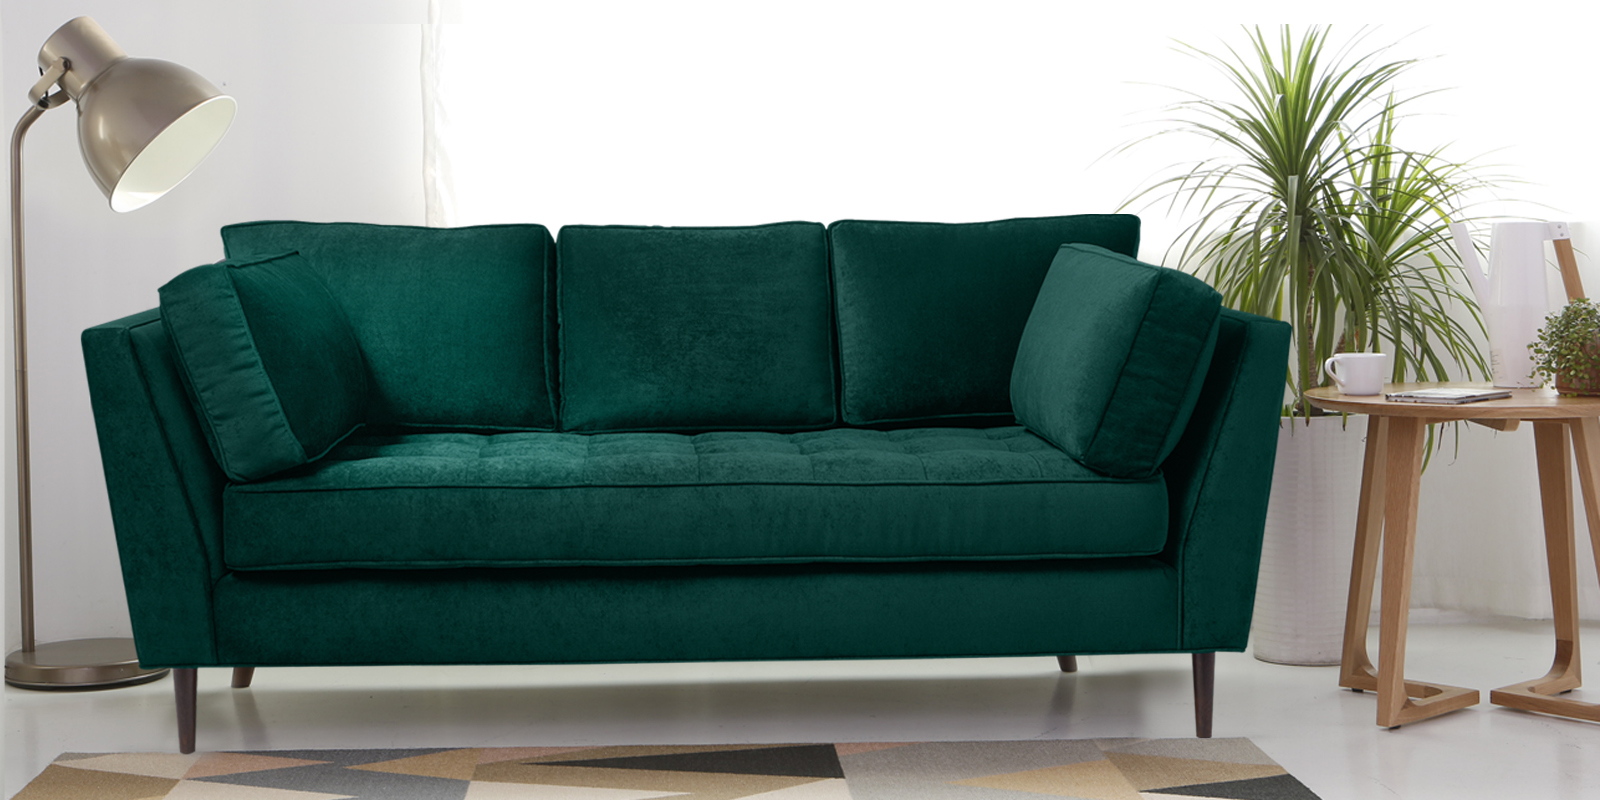 Tassel Fabric 3 Seater Sofa In Green